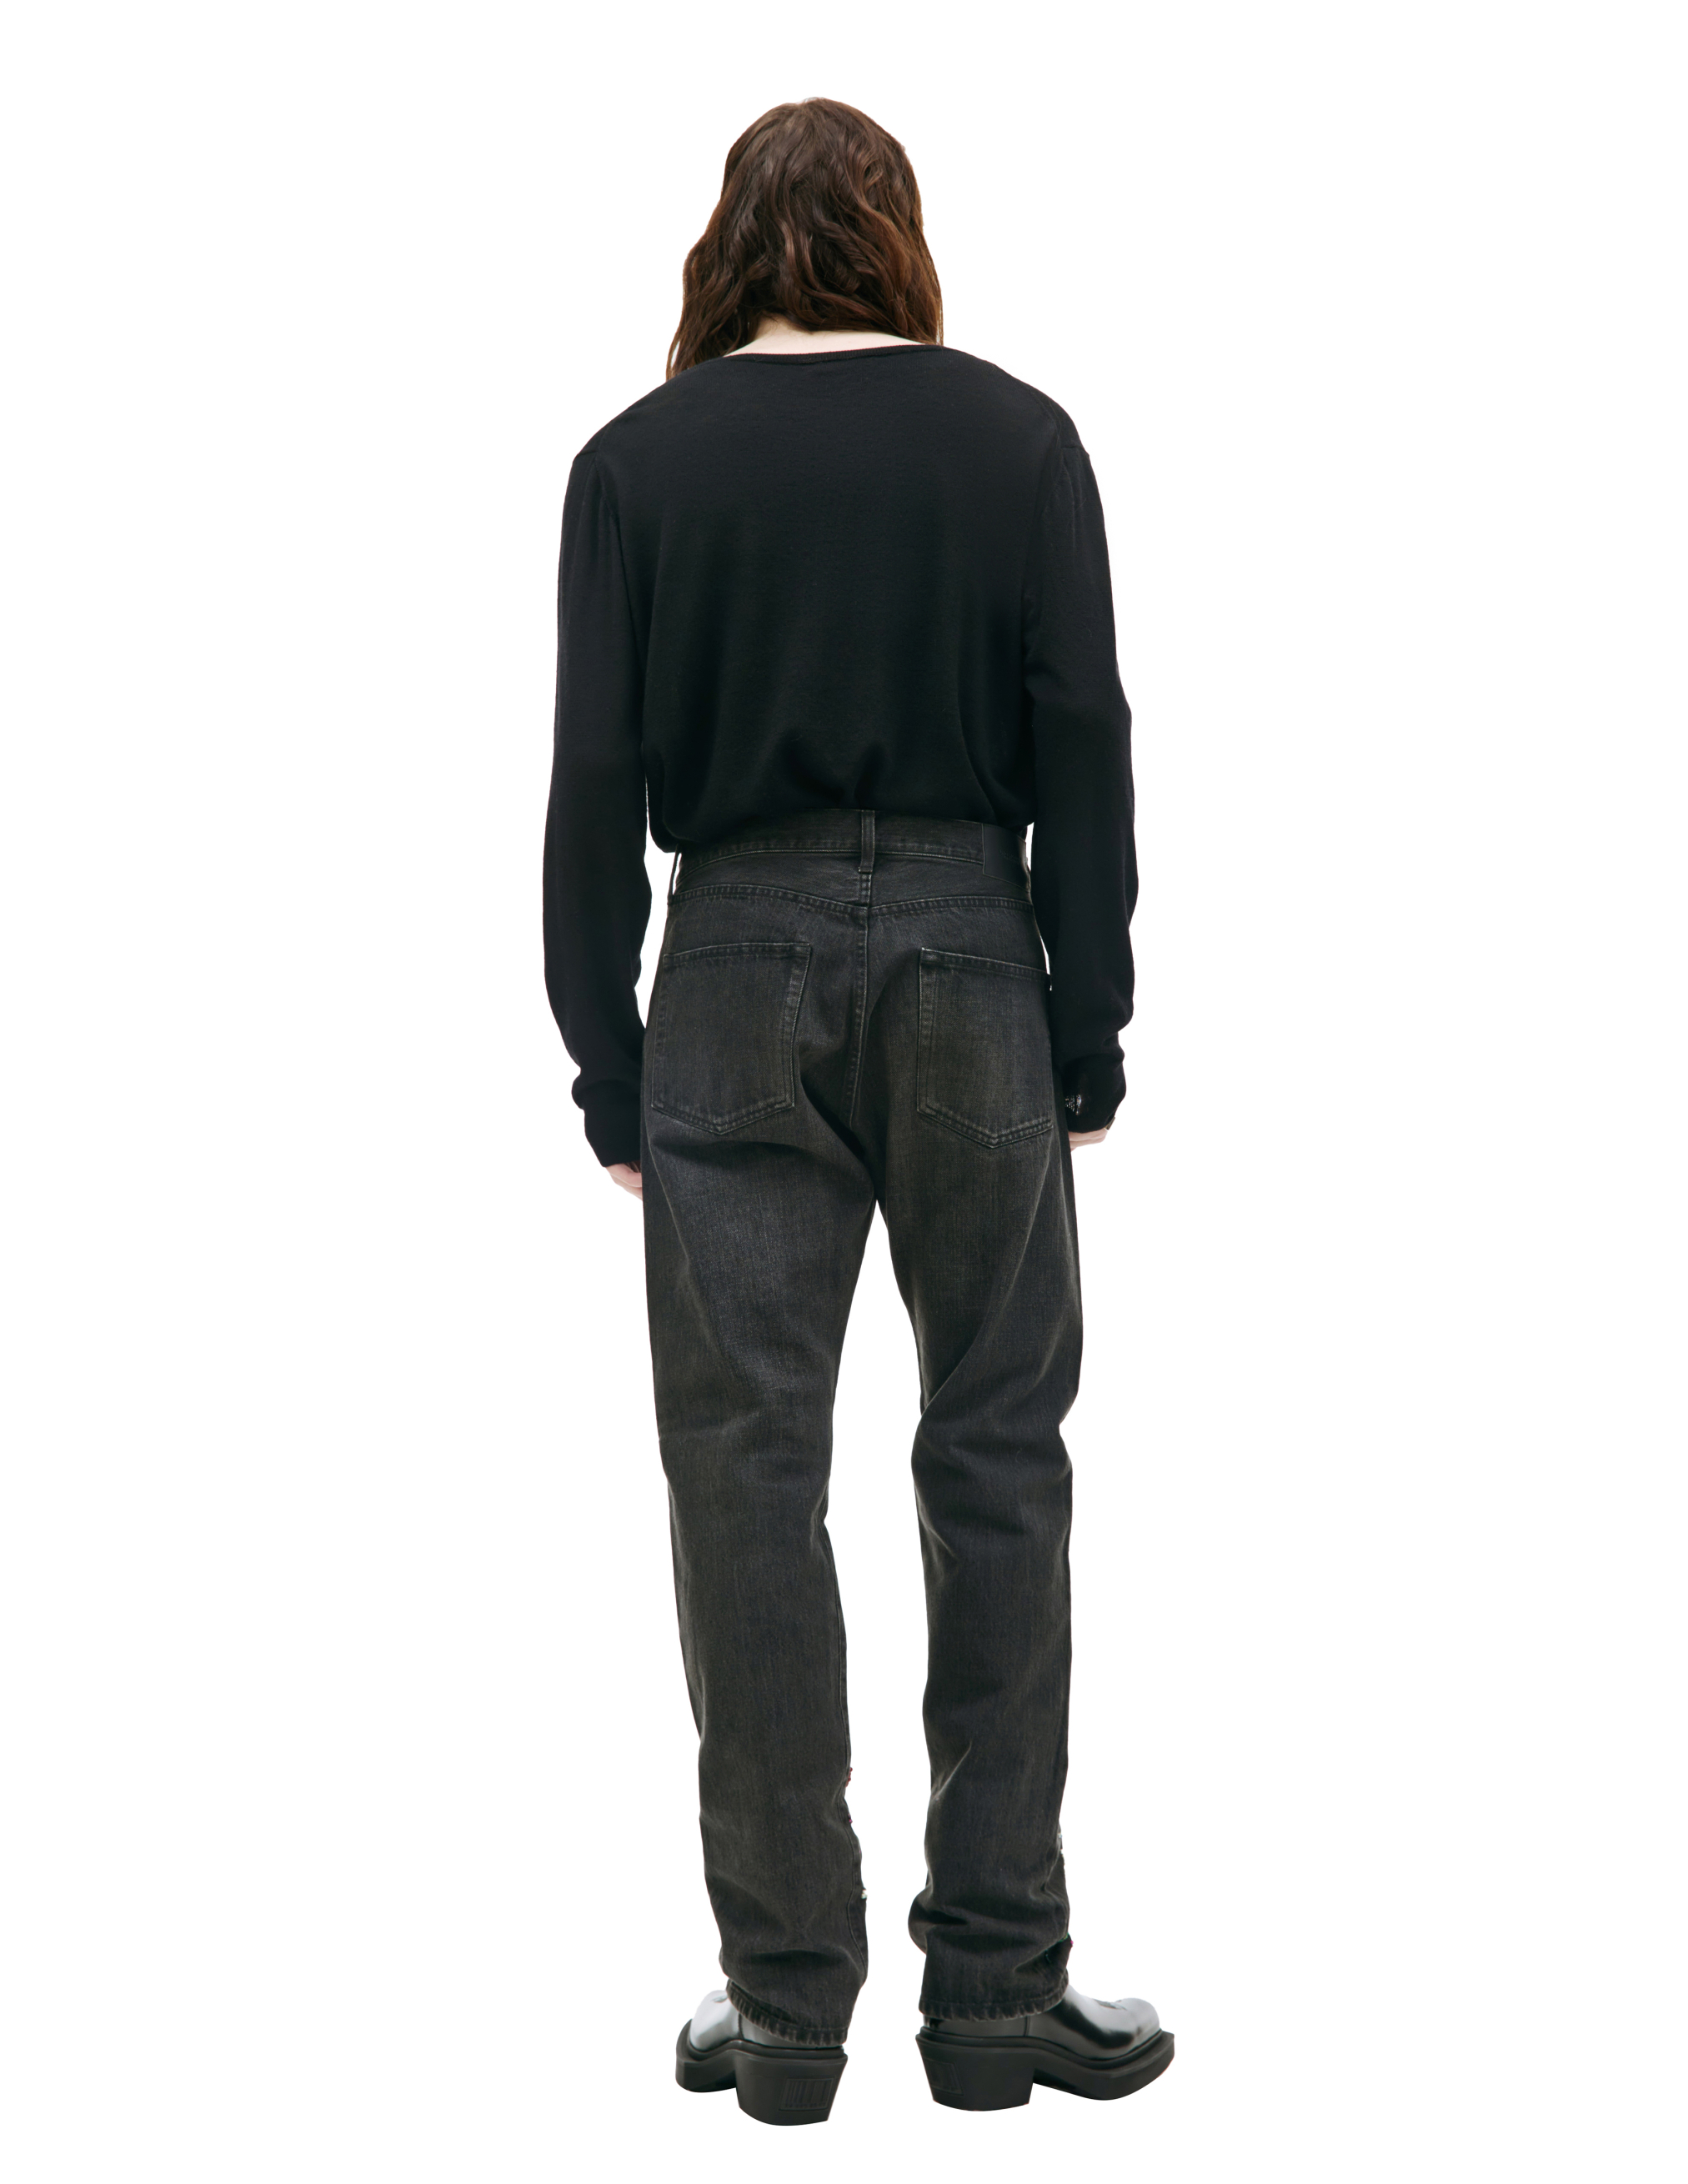 Серые джинсы с вышивкой бисером Undercover UC2C4509-1, размер 5 - фото 3